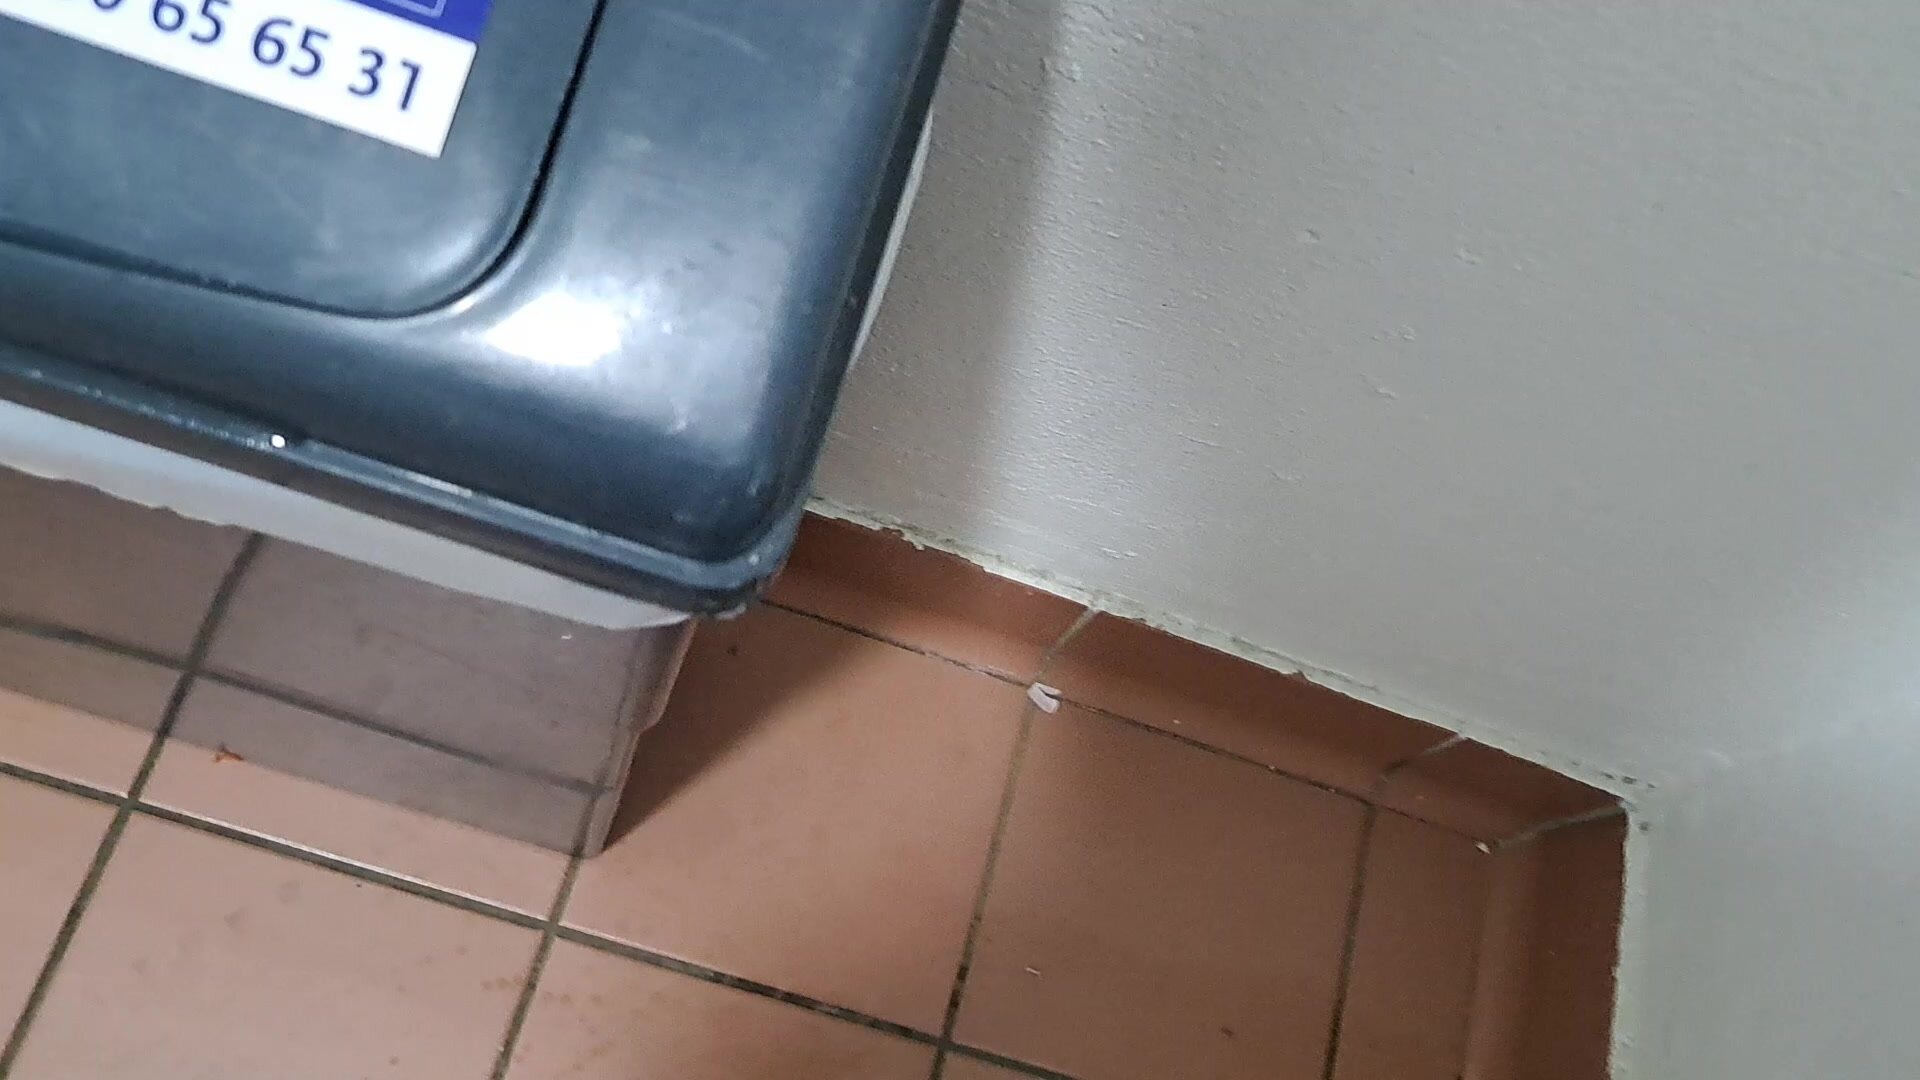 FTM Shitting under public bathroom Bin